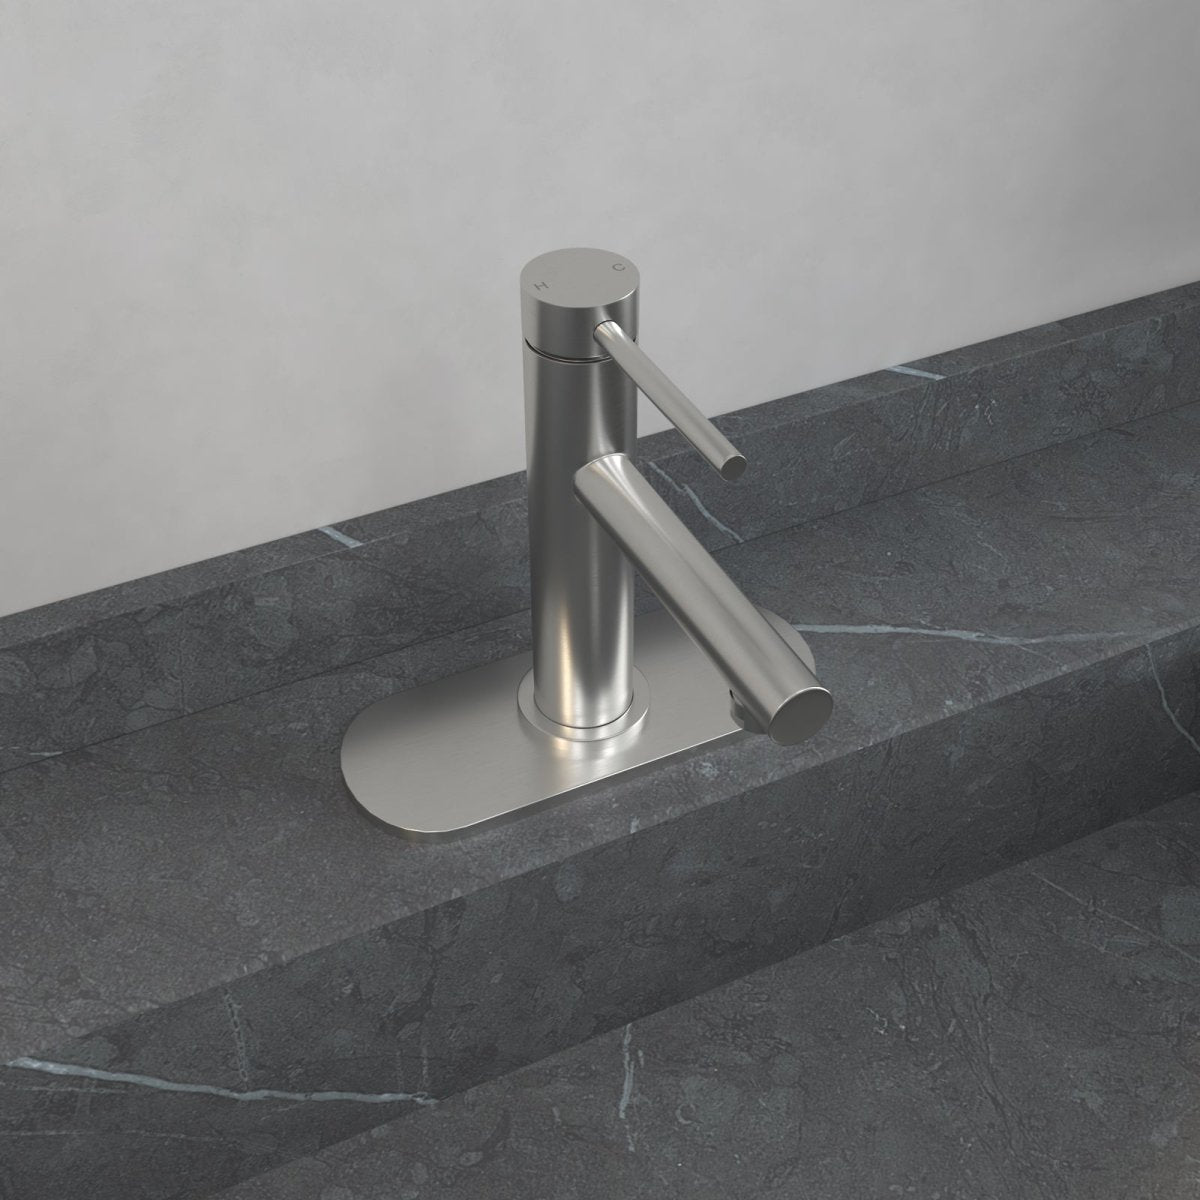 Vanity Single Handle with Supply Hose Bathroom Faucets Nickel - buyfaucet.com